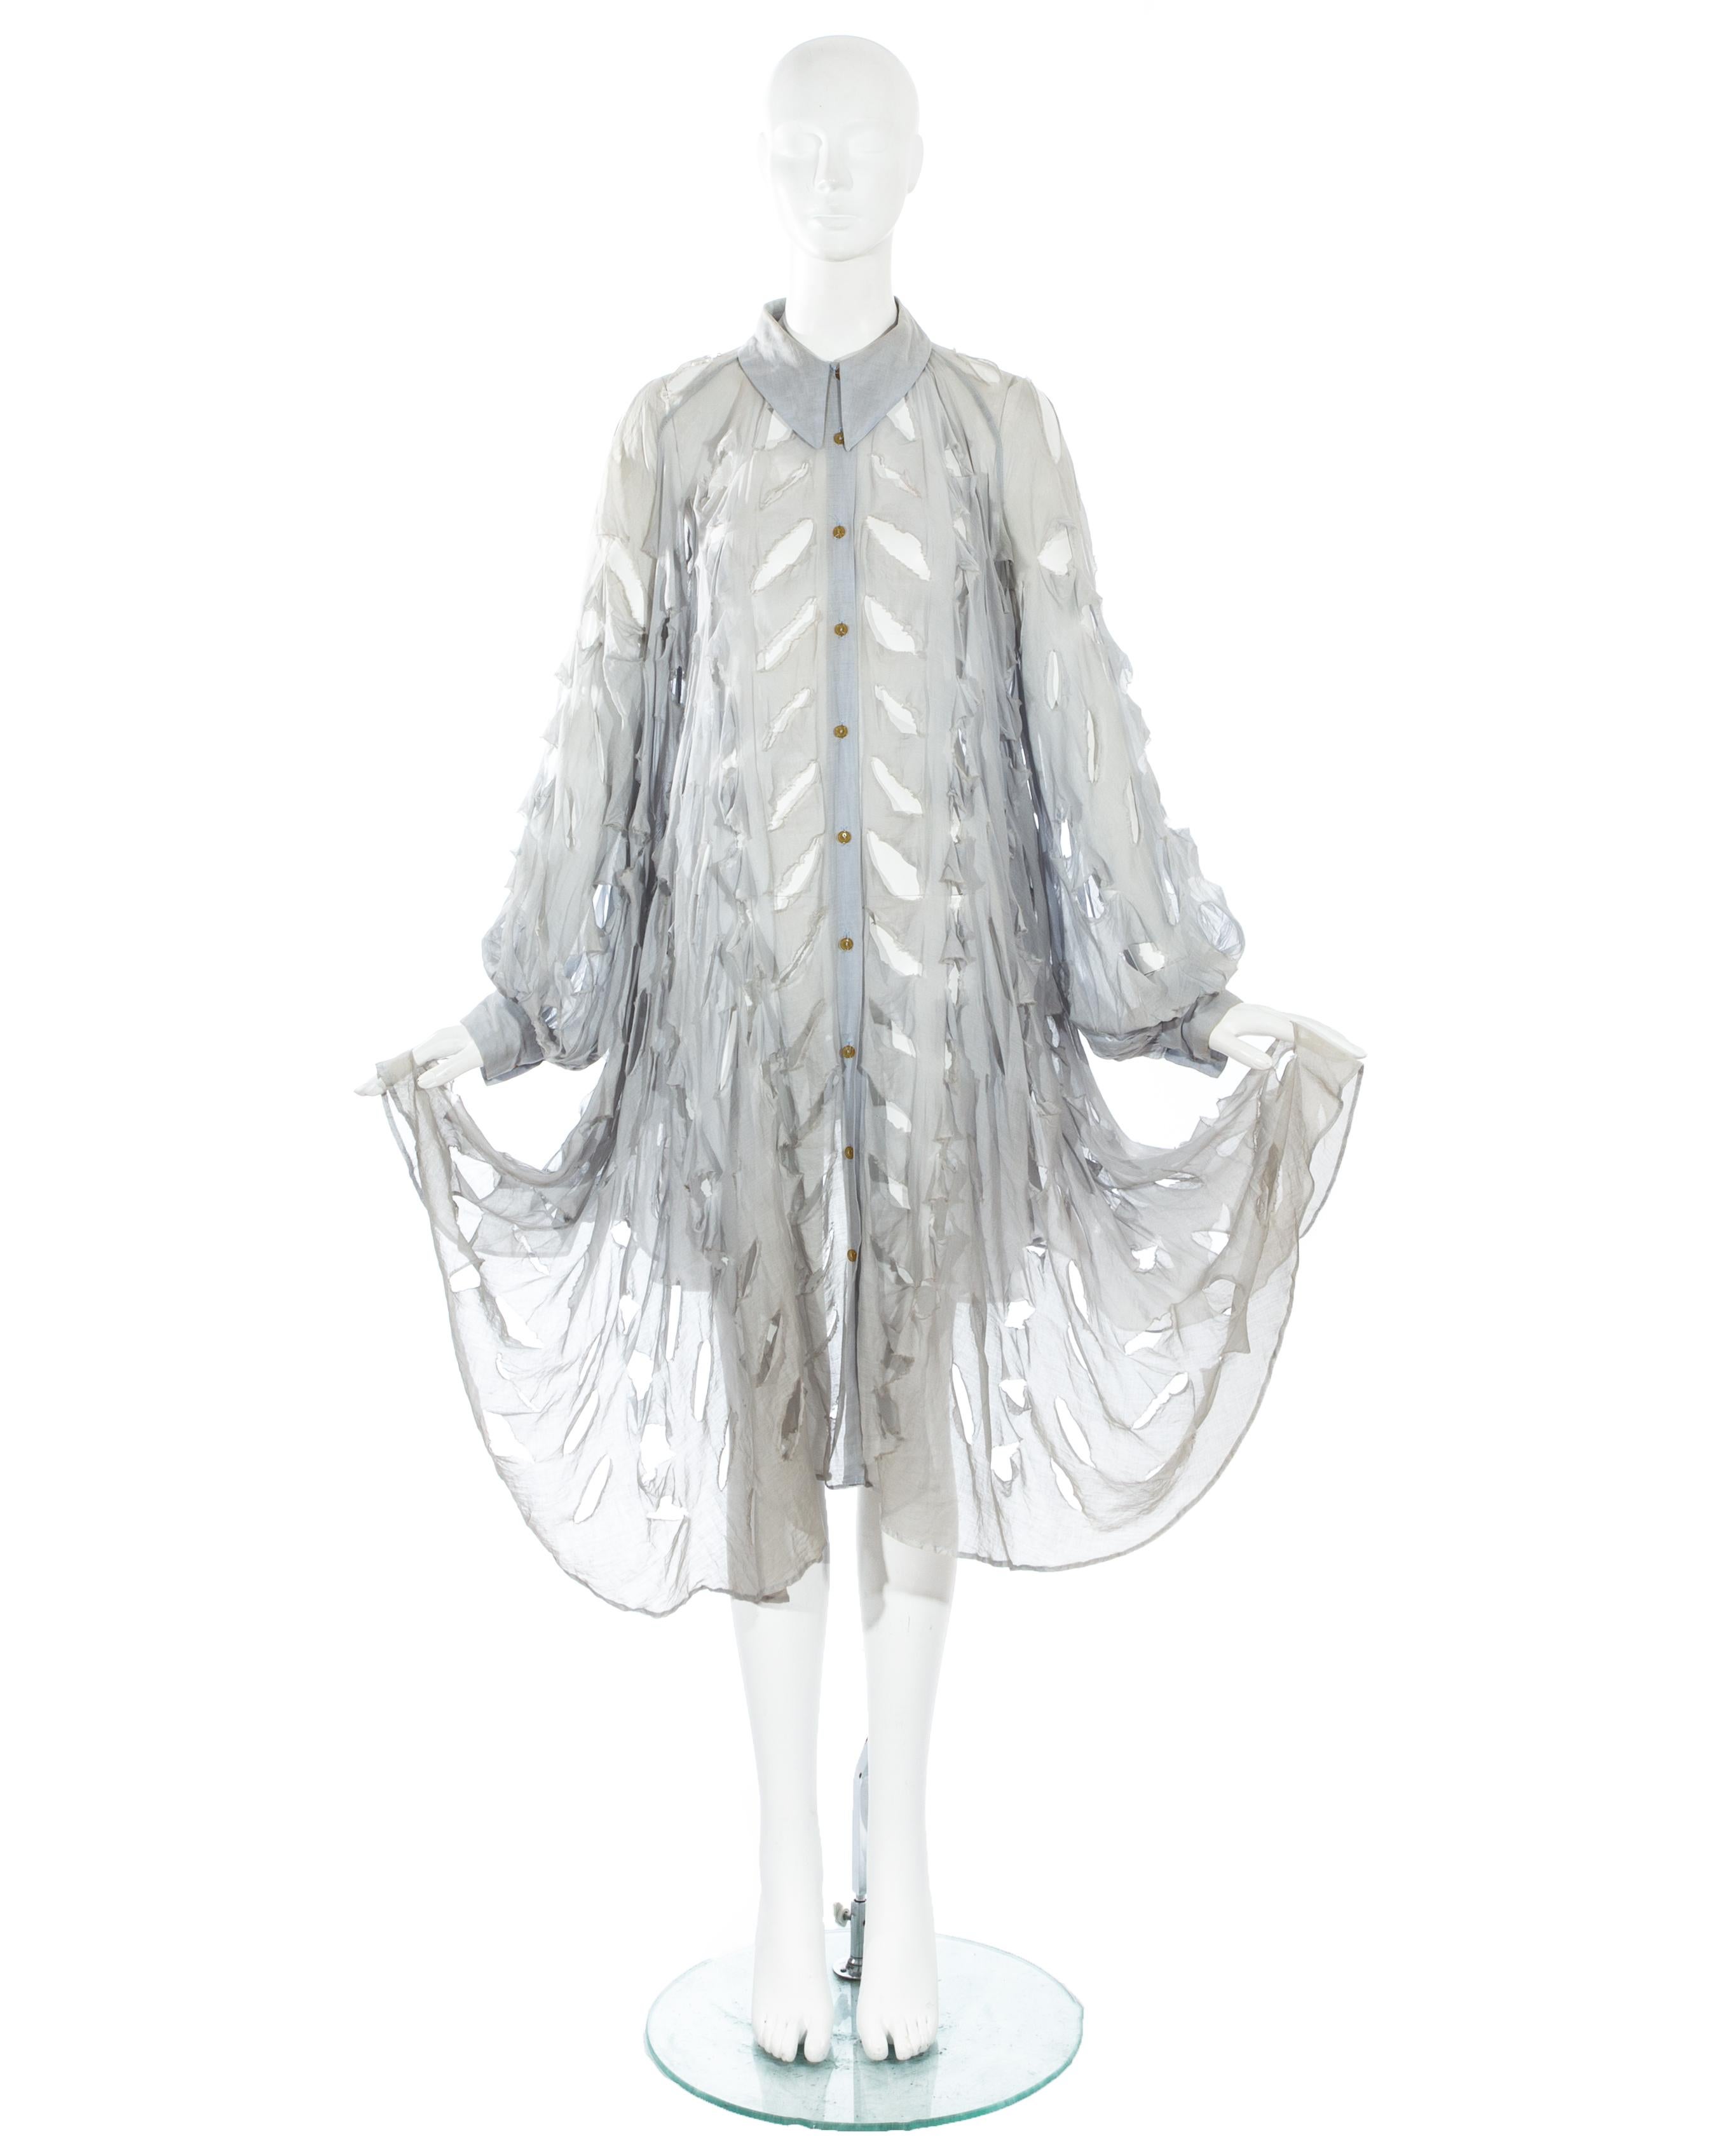 Vivienne Westwood; staubblaue Bluse aus Baumwoll-Voile in Übergröße mit weiten Läuferärmeln, spitzem Kragen und von vorne ansteigendem Saum. Signaturschlitze über die gesamte Bluse.

Cut, Slash & Pull